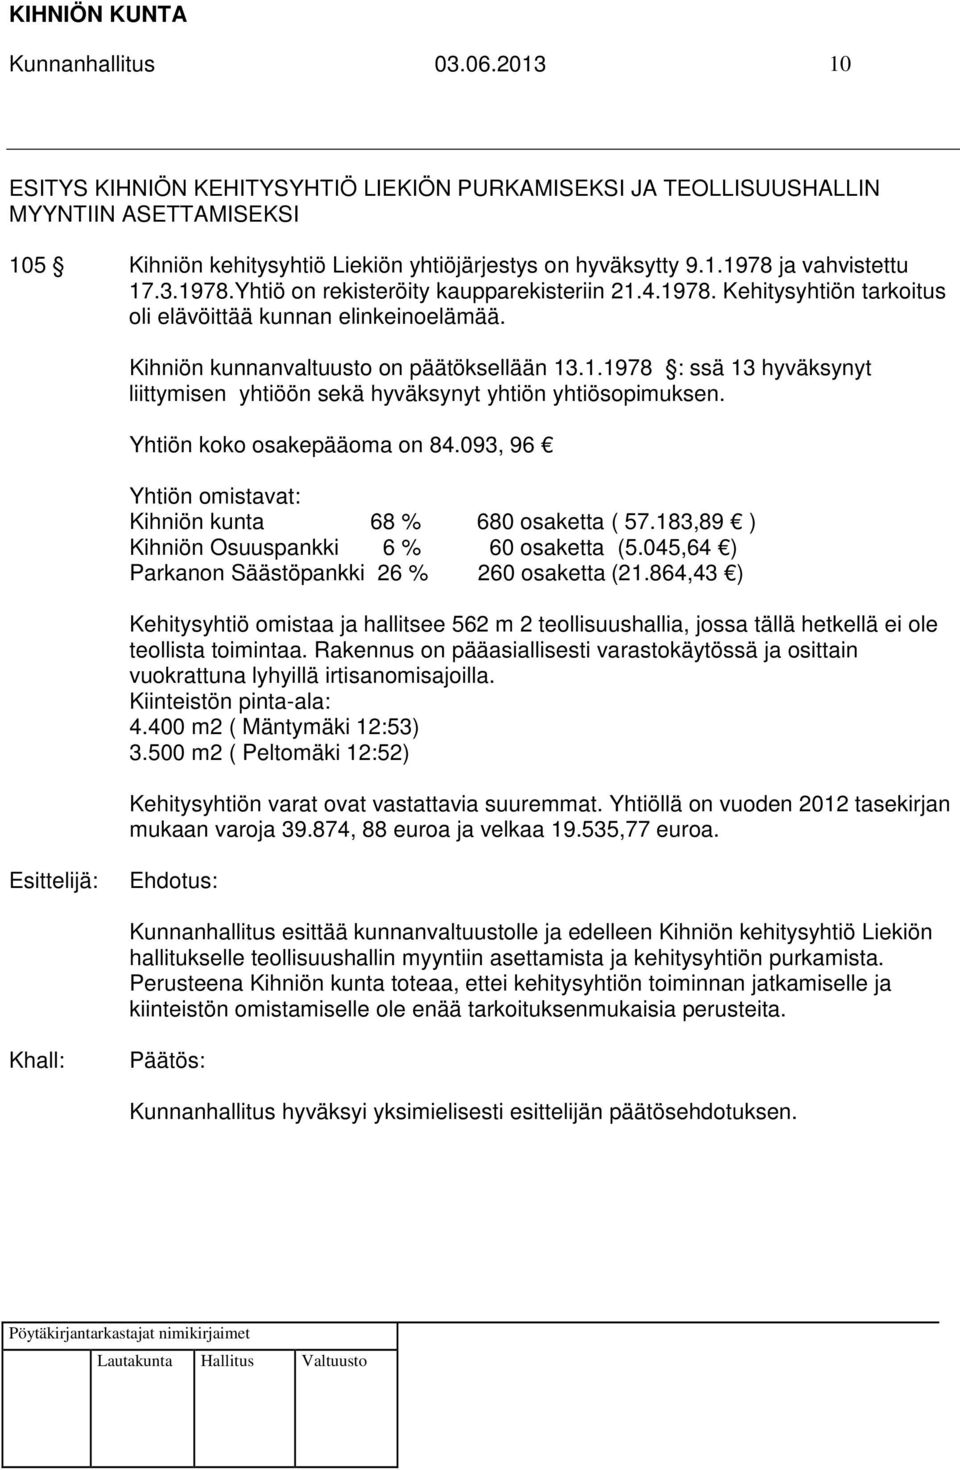 Yhtiön koko osakepääoma on 84.093, 96 Yhtiön omistavat: Kihniön kunta 68 % 680 osaketta ( 57.183,89 ) Kihniön Osuuspankki 6 % 60 osaketta (5.045,64 ) Parkanon Säästöpankki 26 % 260 osaketta (21.